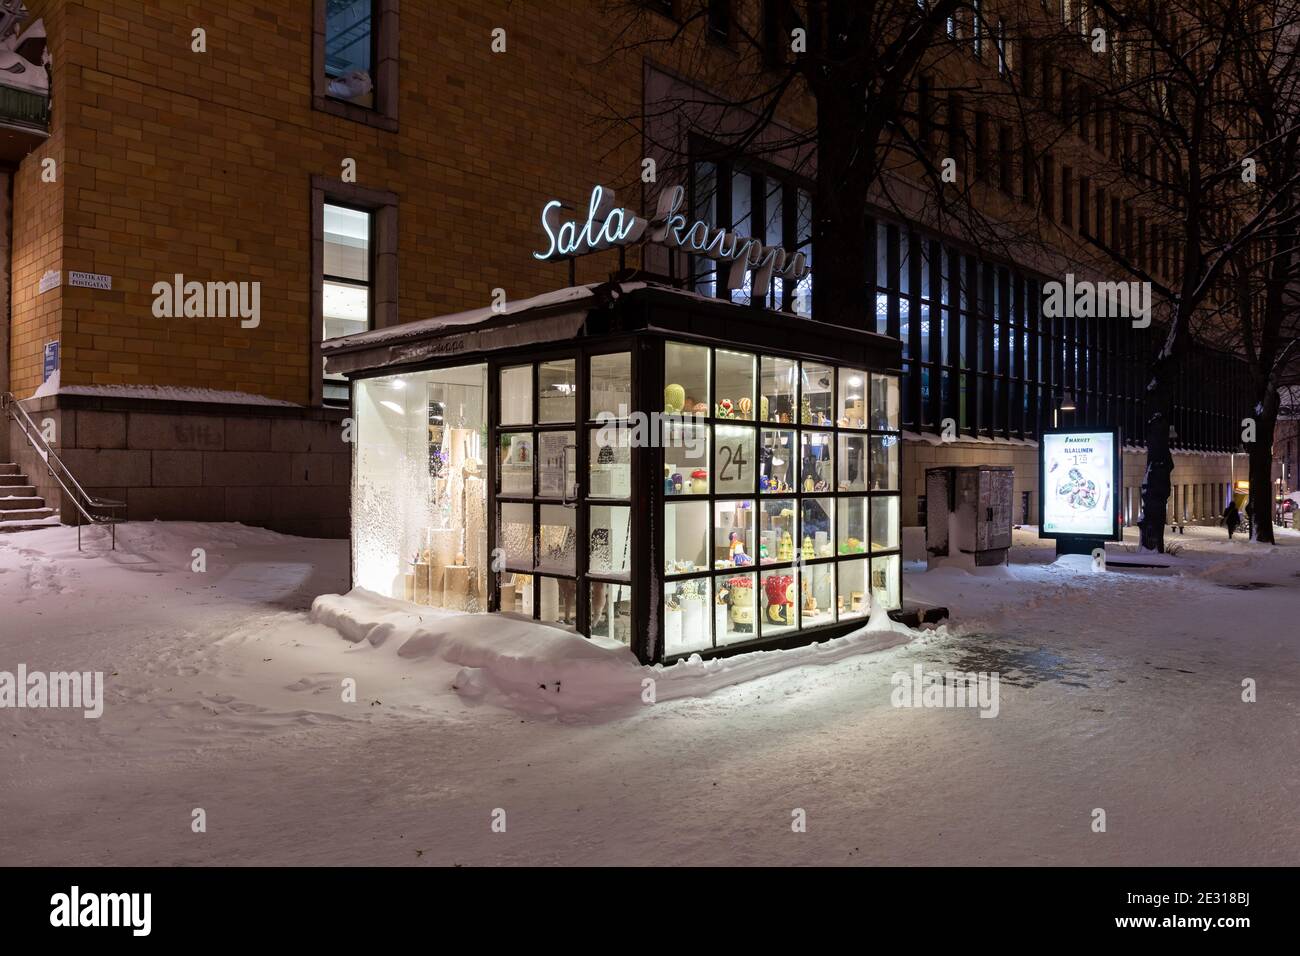 Salakauppa (Geheimladen), ein Glaskiosk im Zentrum von Helsinki, der von den Designern Aamu Song & Johan Olin von DER FIRMA betrieben wird Stockfoto